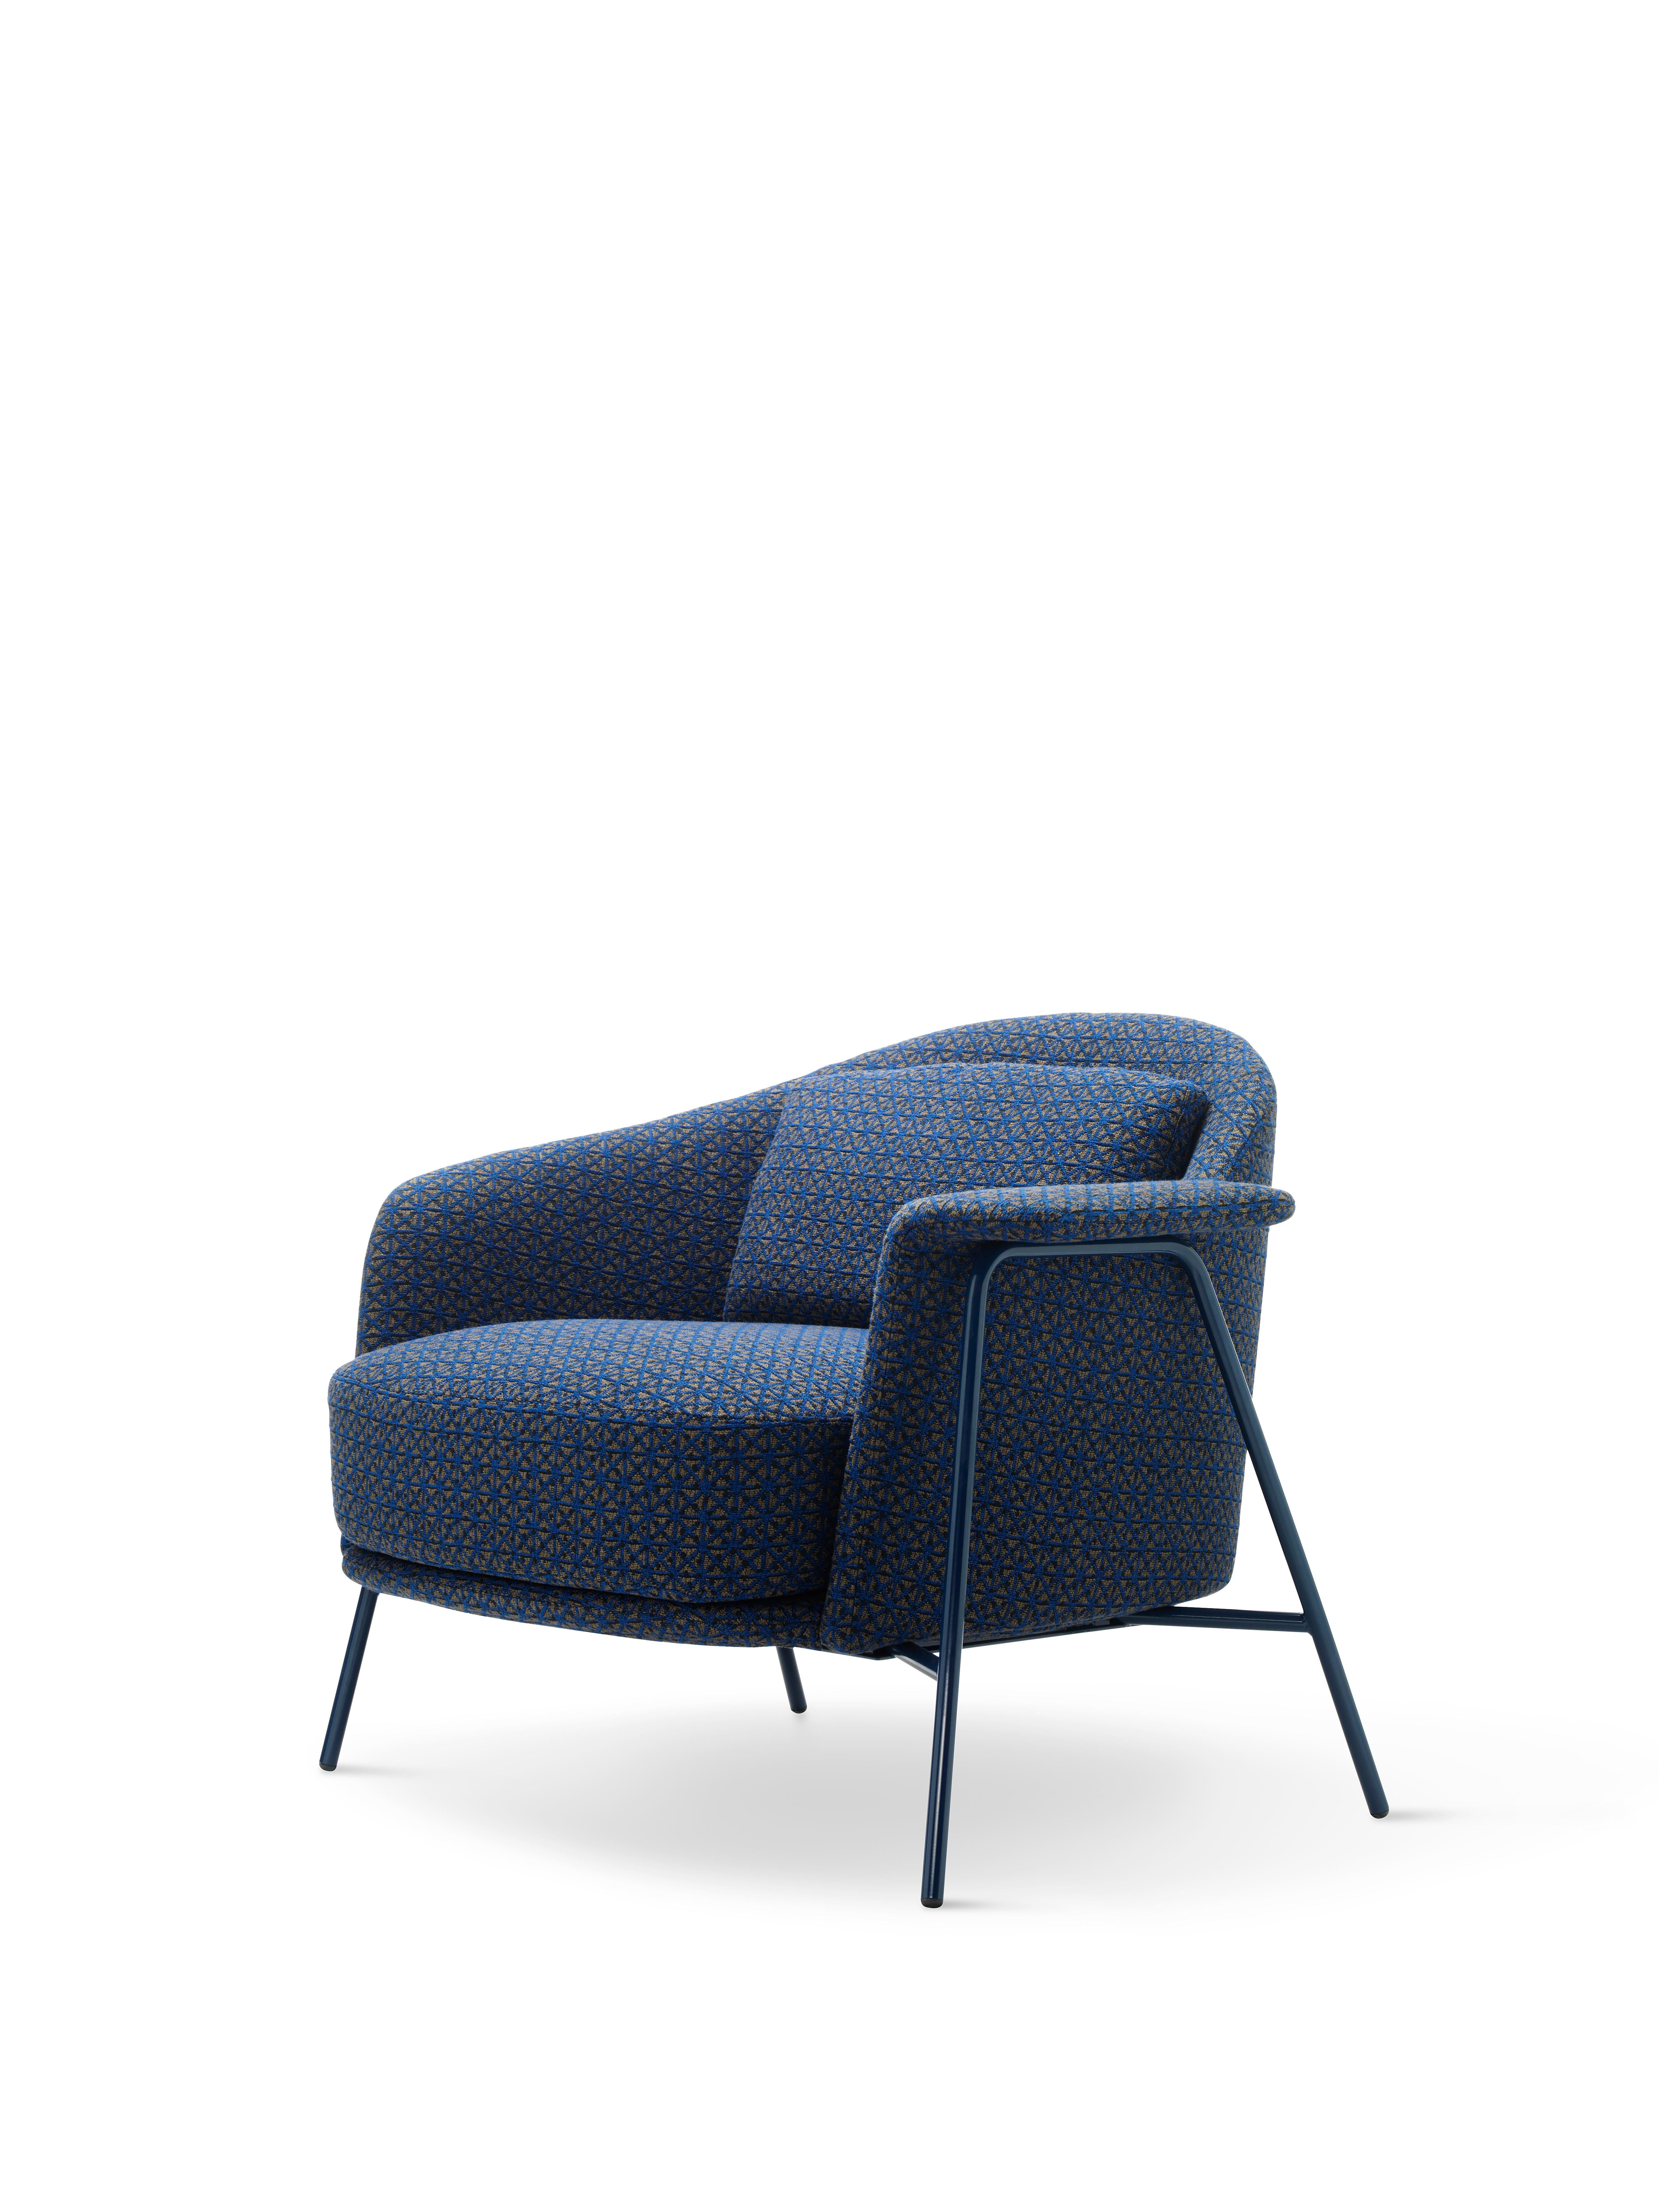 Le design sobre et l'allure vaguement nordique du fauteuil Kepi sont adoucis par des lignes arrondies qui ajoutent du caractère et améliorent le confort. Son design épuré et son élégance nonchalante le rendent parfait pour la maison et les